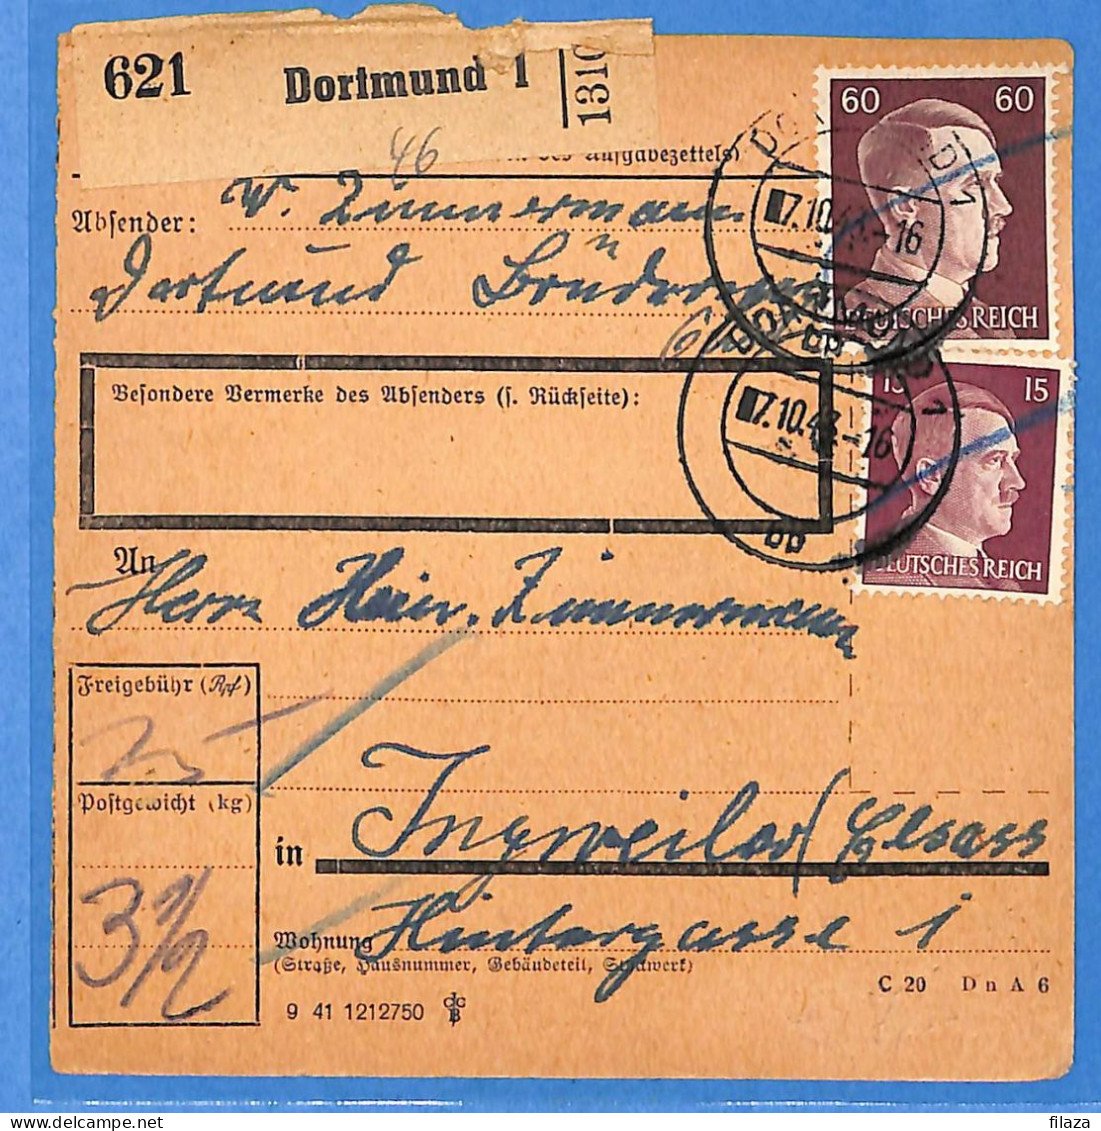 Allemagne Reich 1943 - Carte Postale De Dortmund - G33190 - Covers & Documents